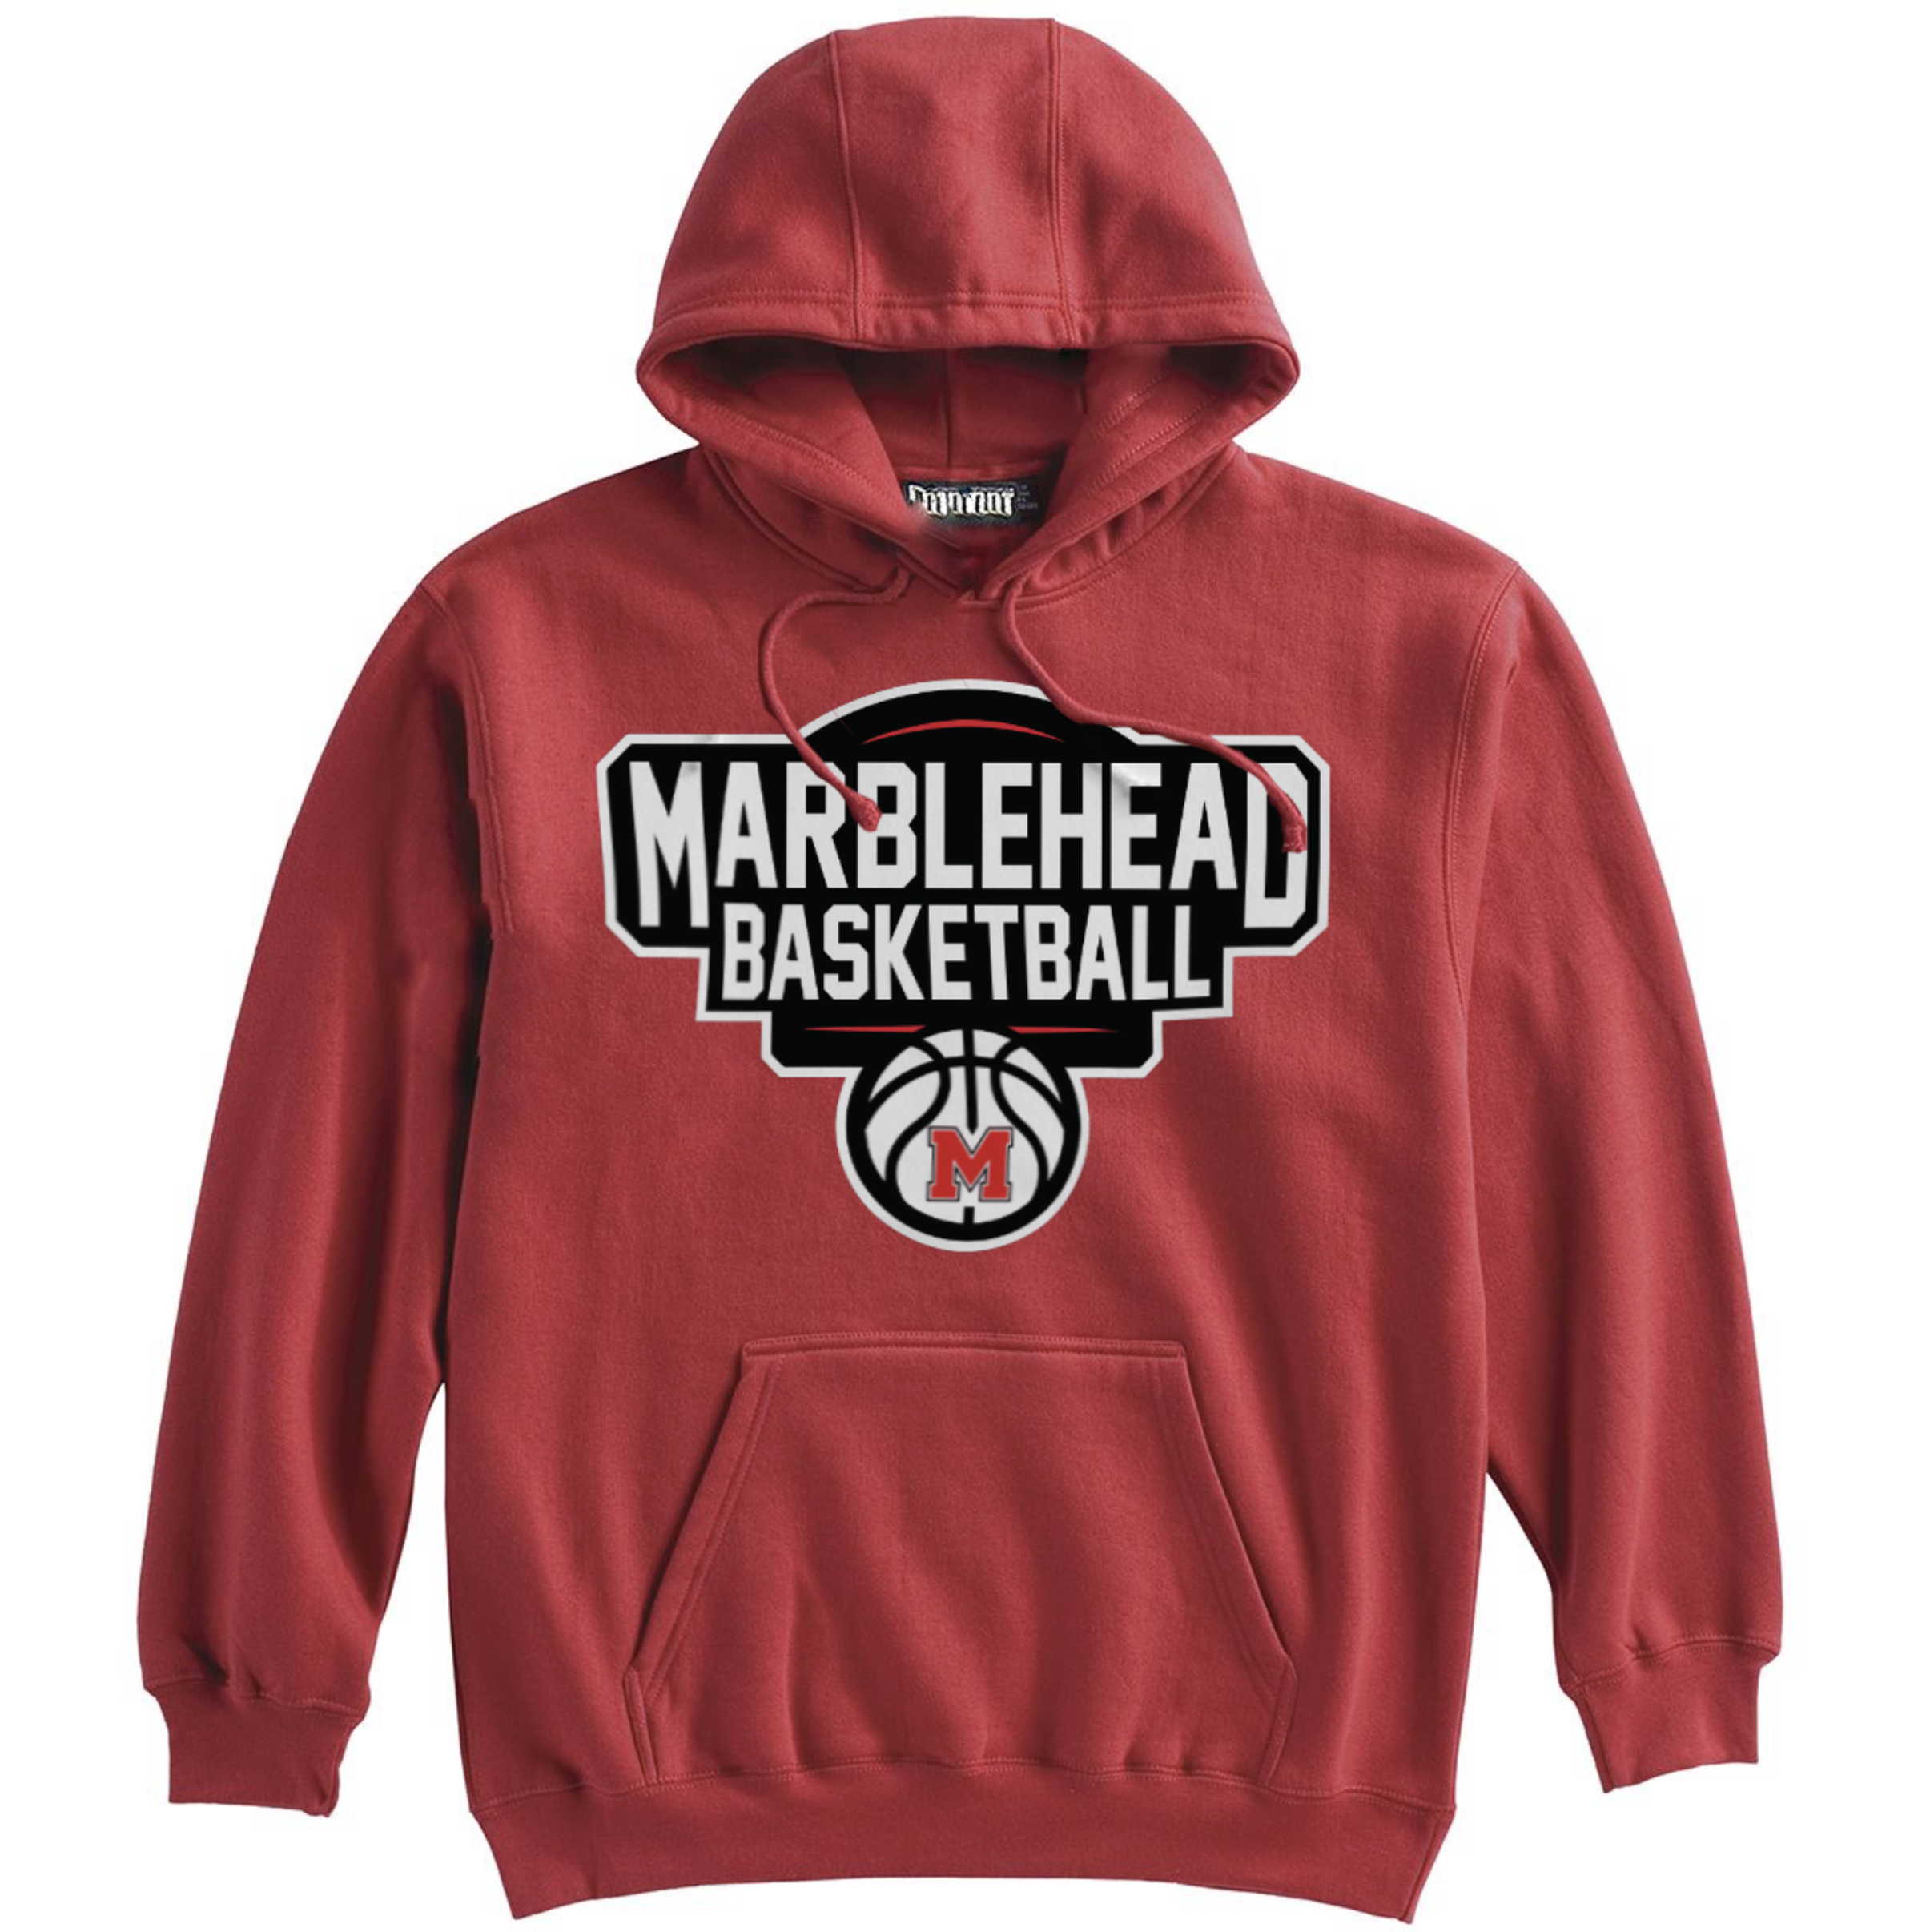 Marblehead Basketball Hoodie